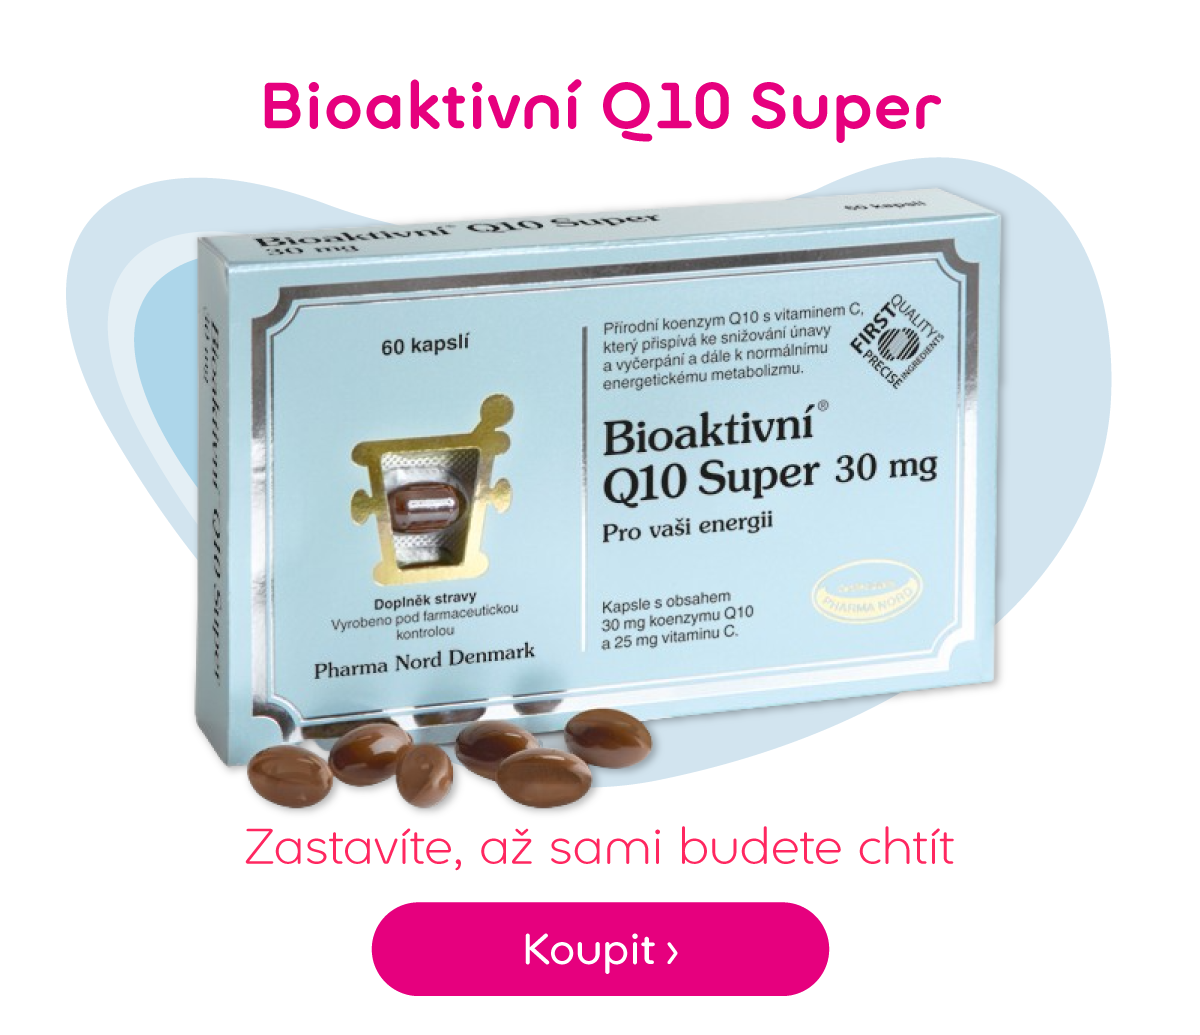 Bioaktivní Q10 Super